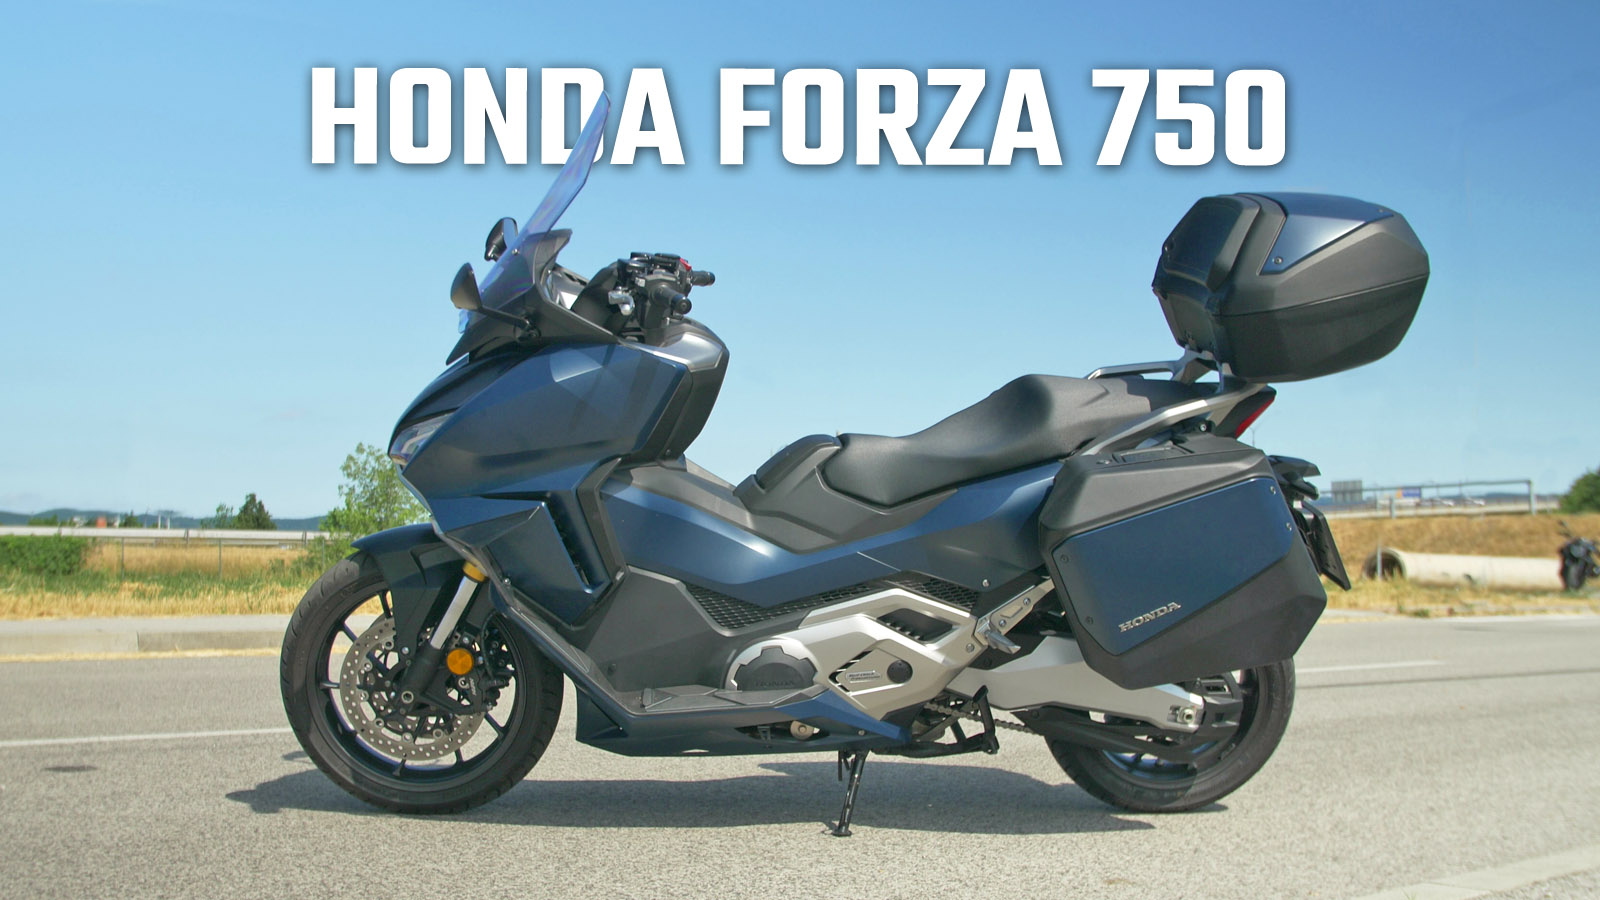 Honda Forza 750